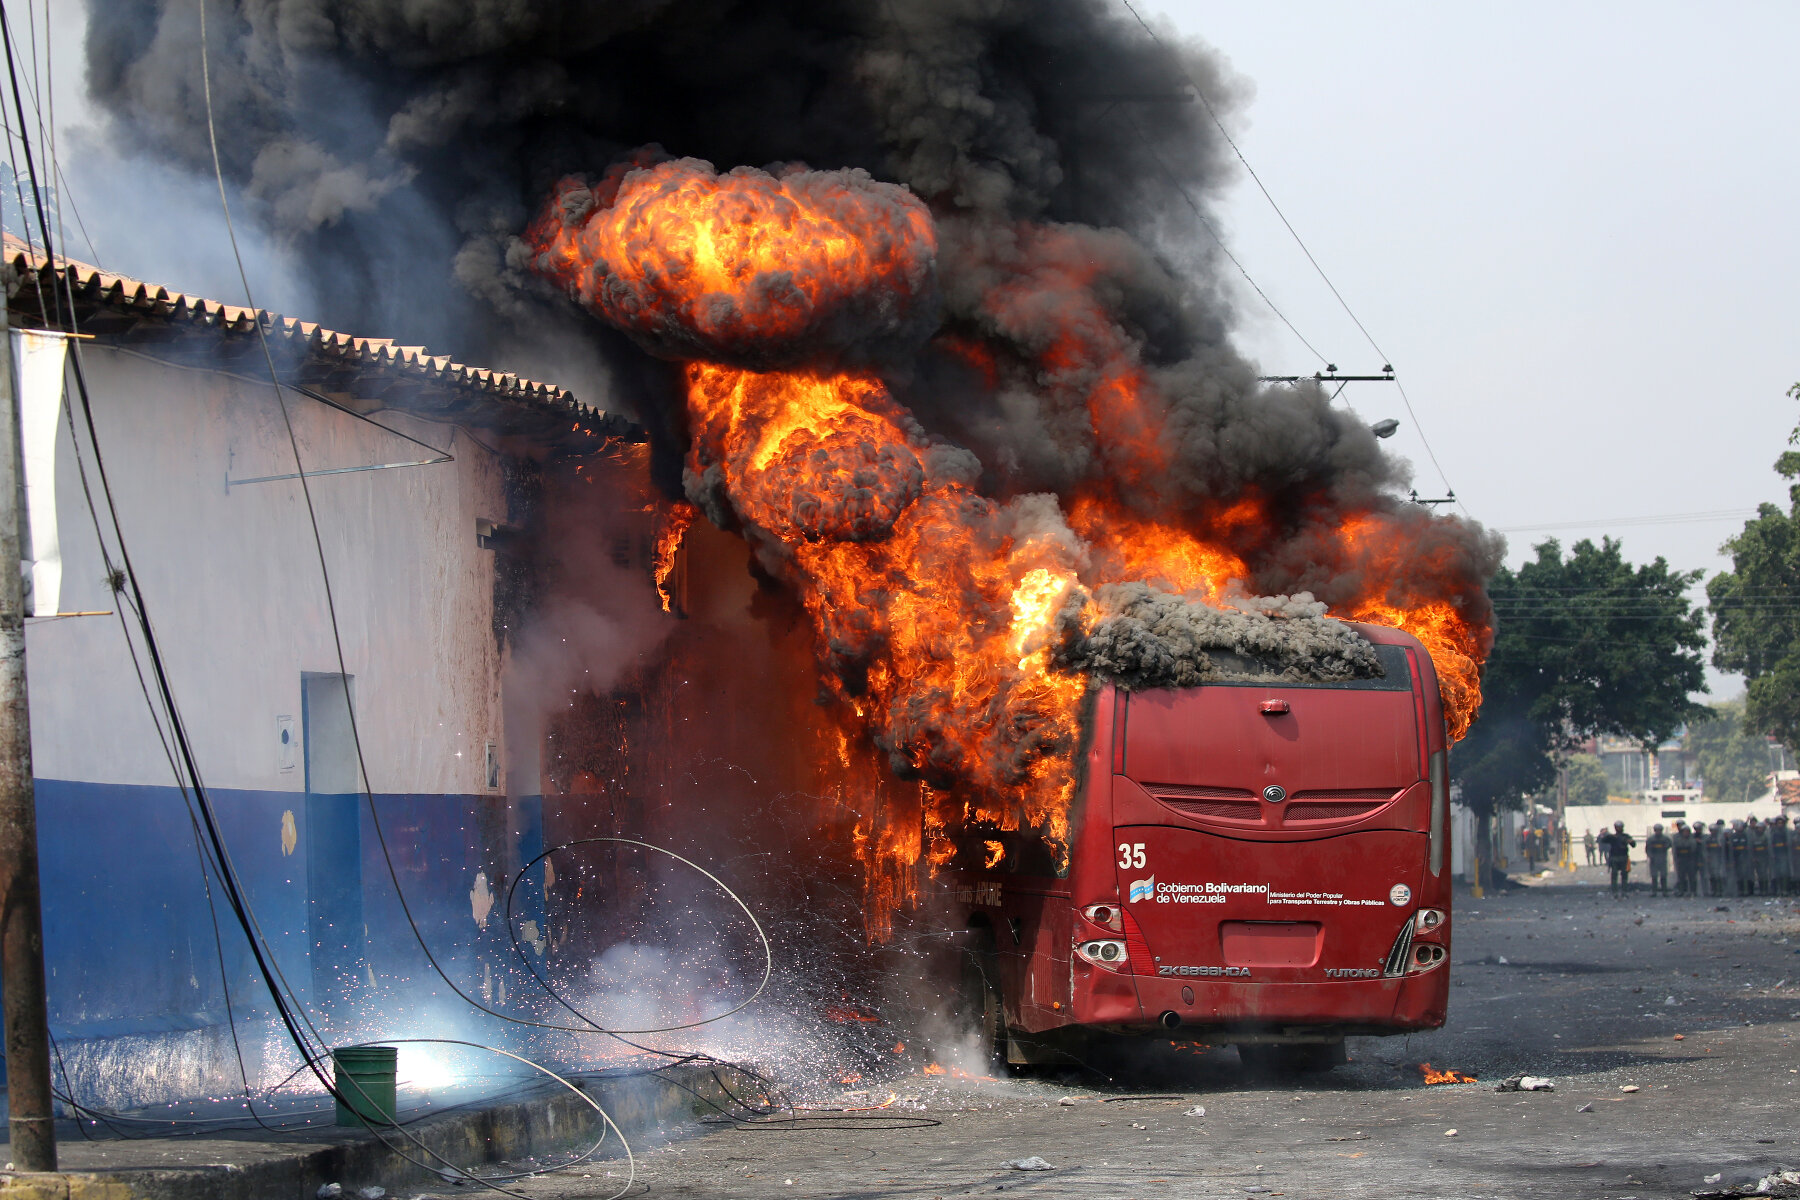 <p>Протестующие подожгли автобус после блокировки сотрудниками правоохранительных органов части&nbsp;города Уренья&nbsp;в Венесуэле.</p>